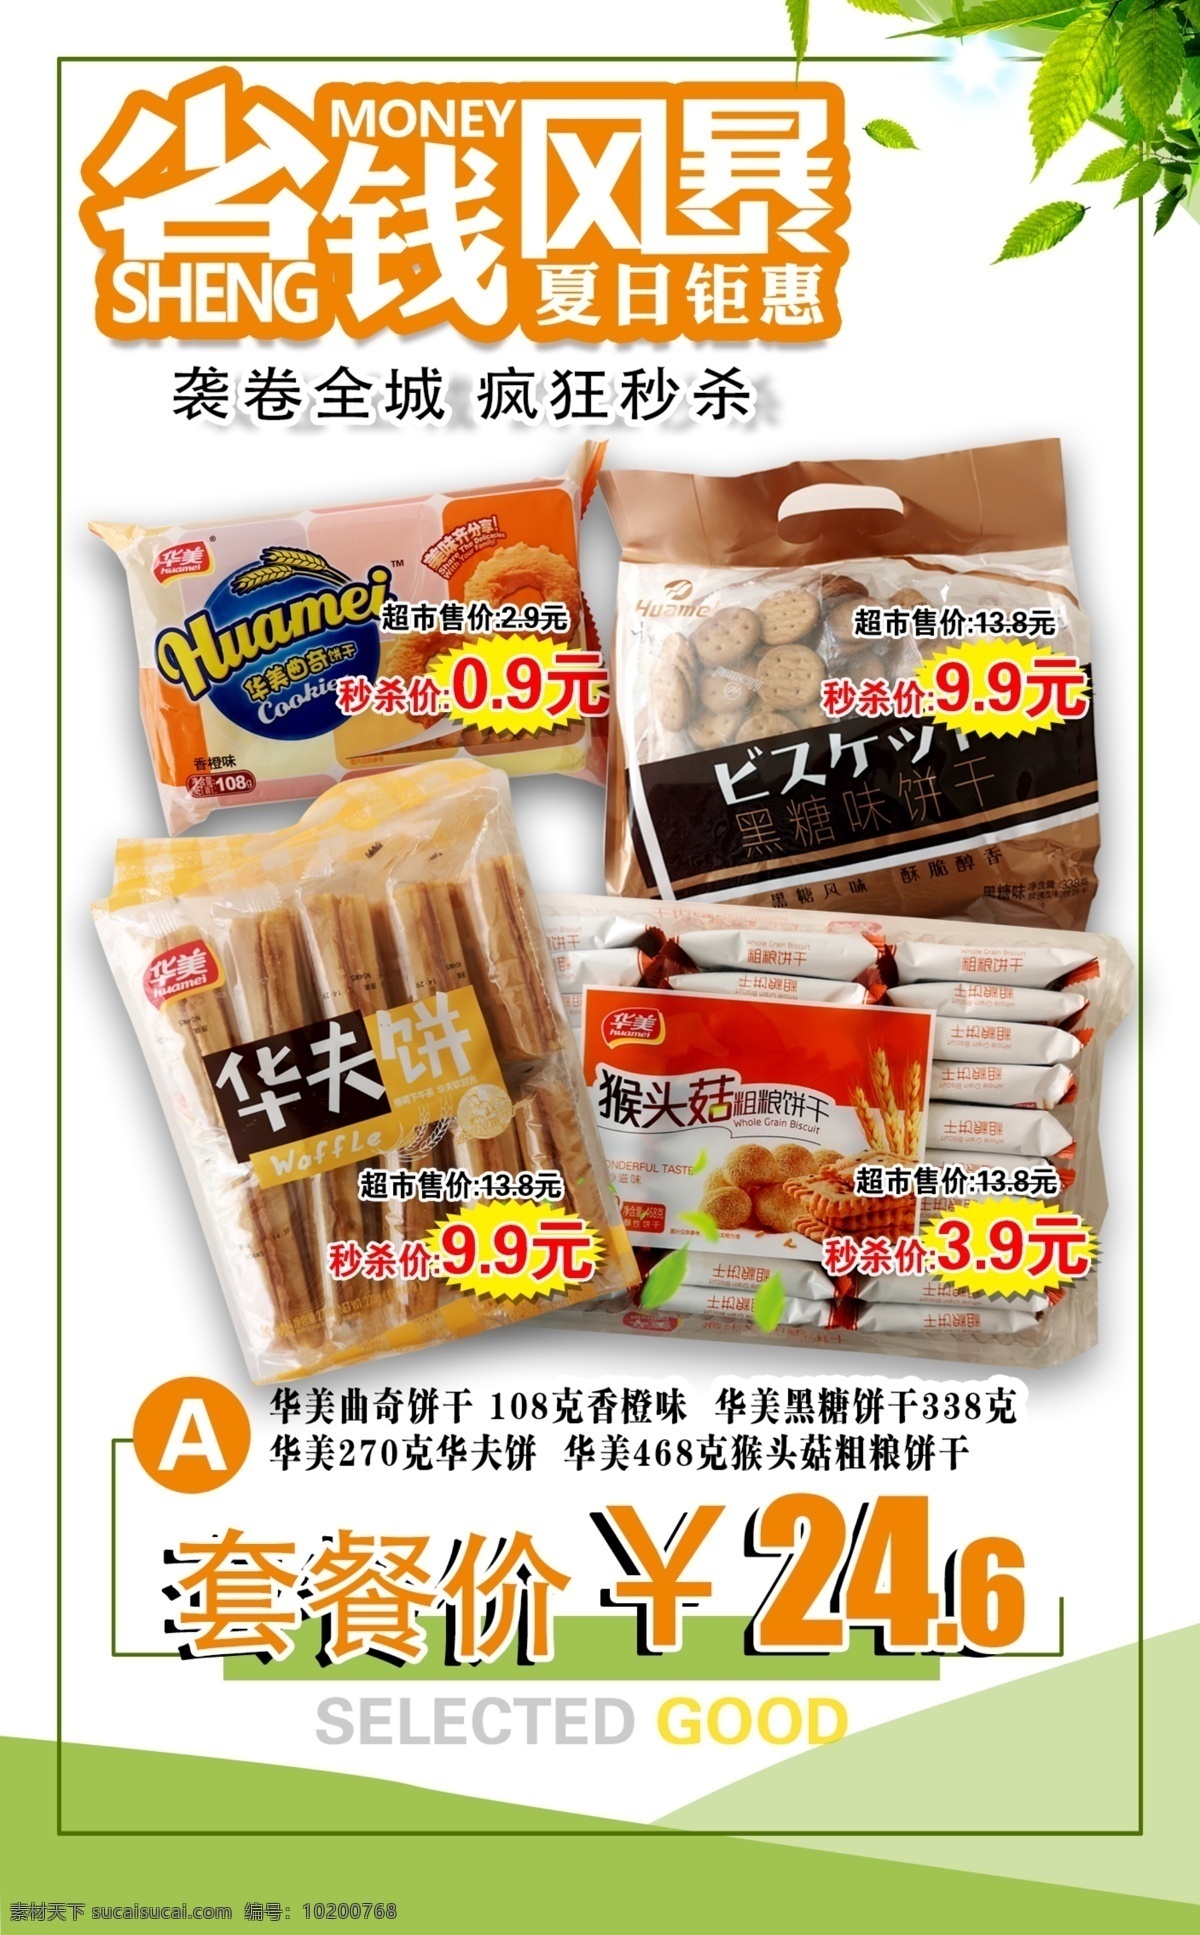 超市宣传单 超市 便利店 省钱 彩页 休闲 零食 套餐 招贴设计